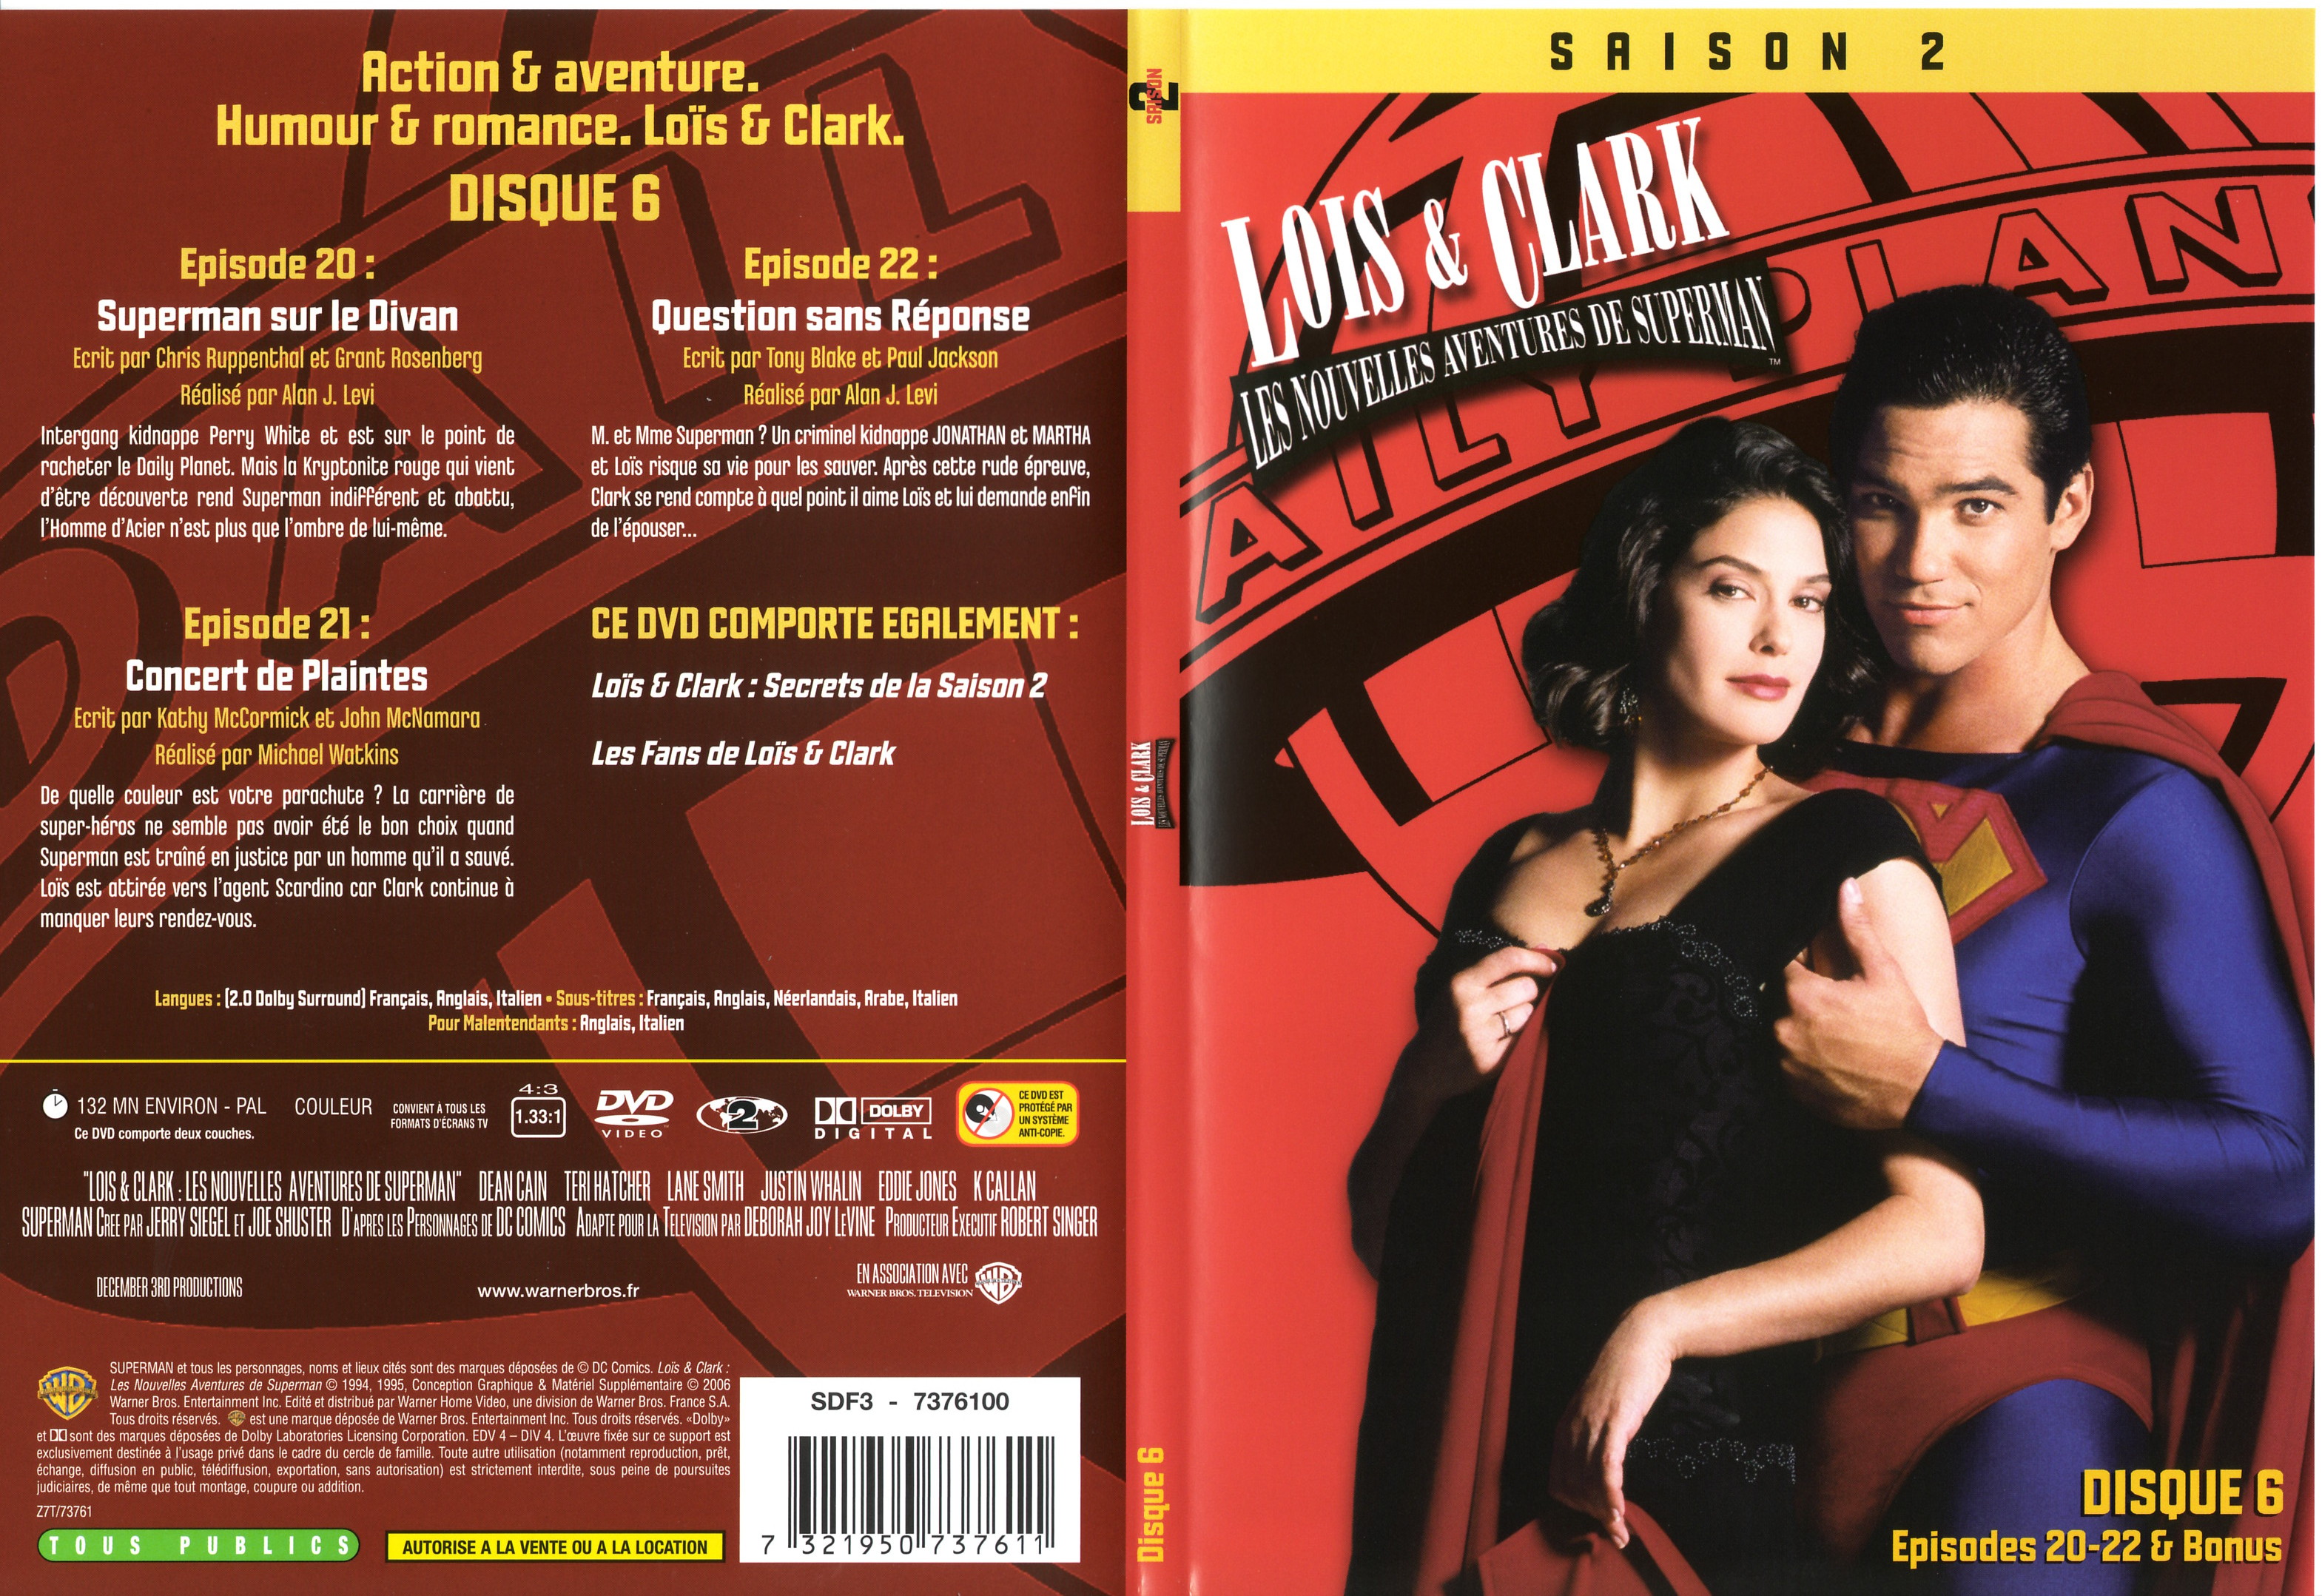 Jaquette DVD Lois et Clark Saison 2 vol 6